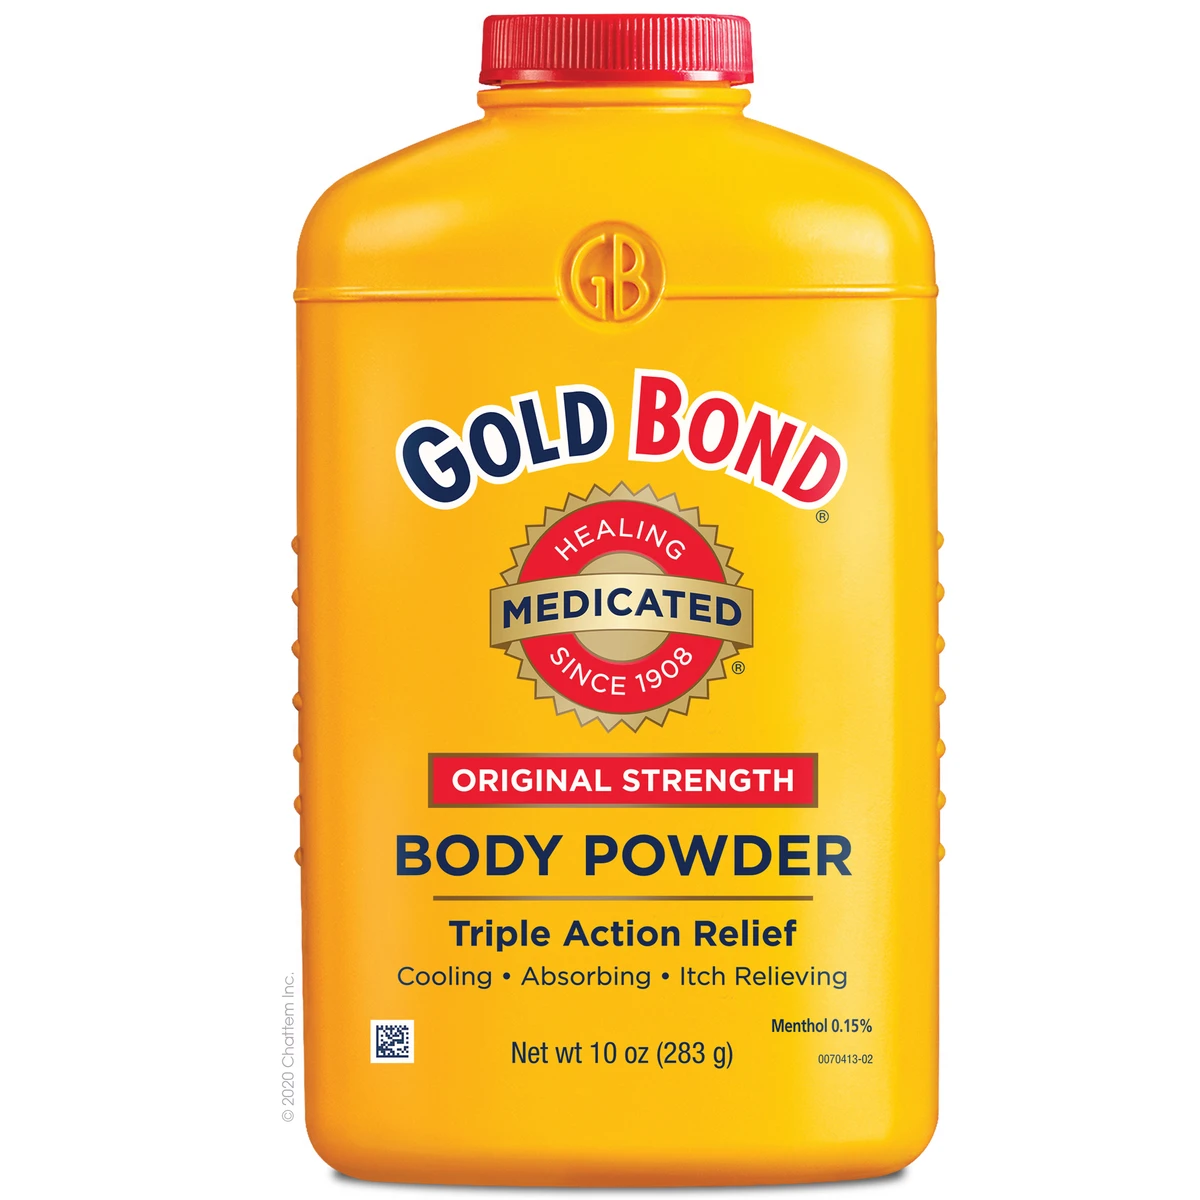 Gold Bond Original Strength Medicated Body Powder (2016 formulation)